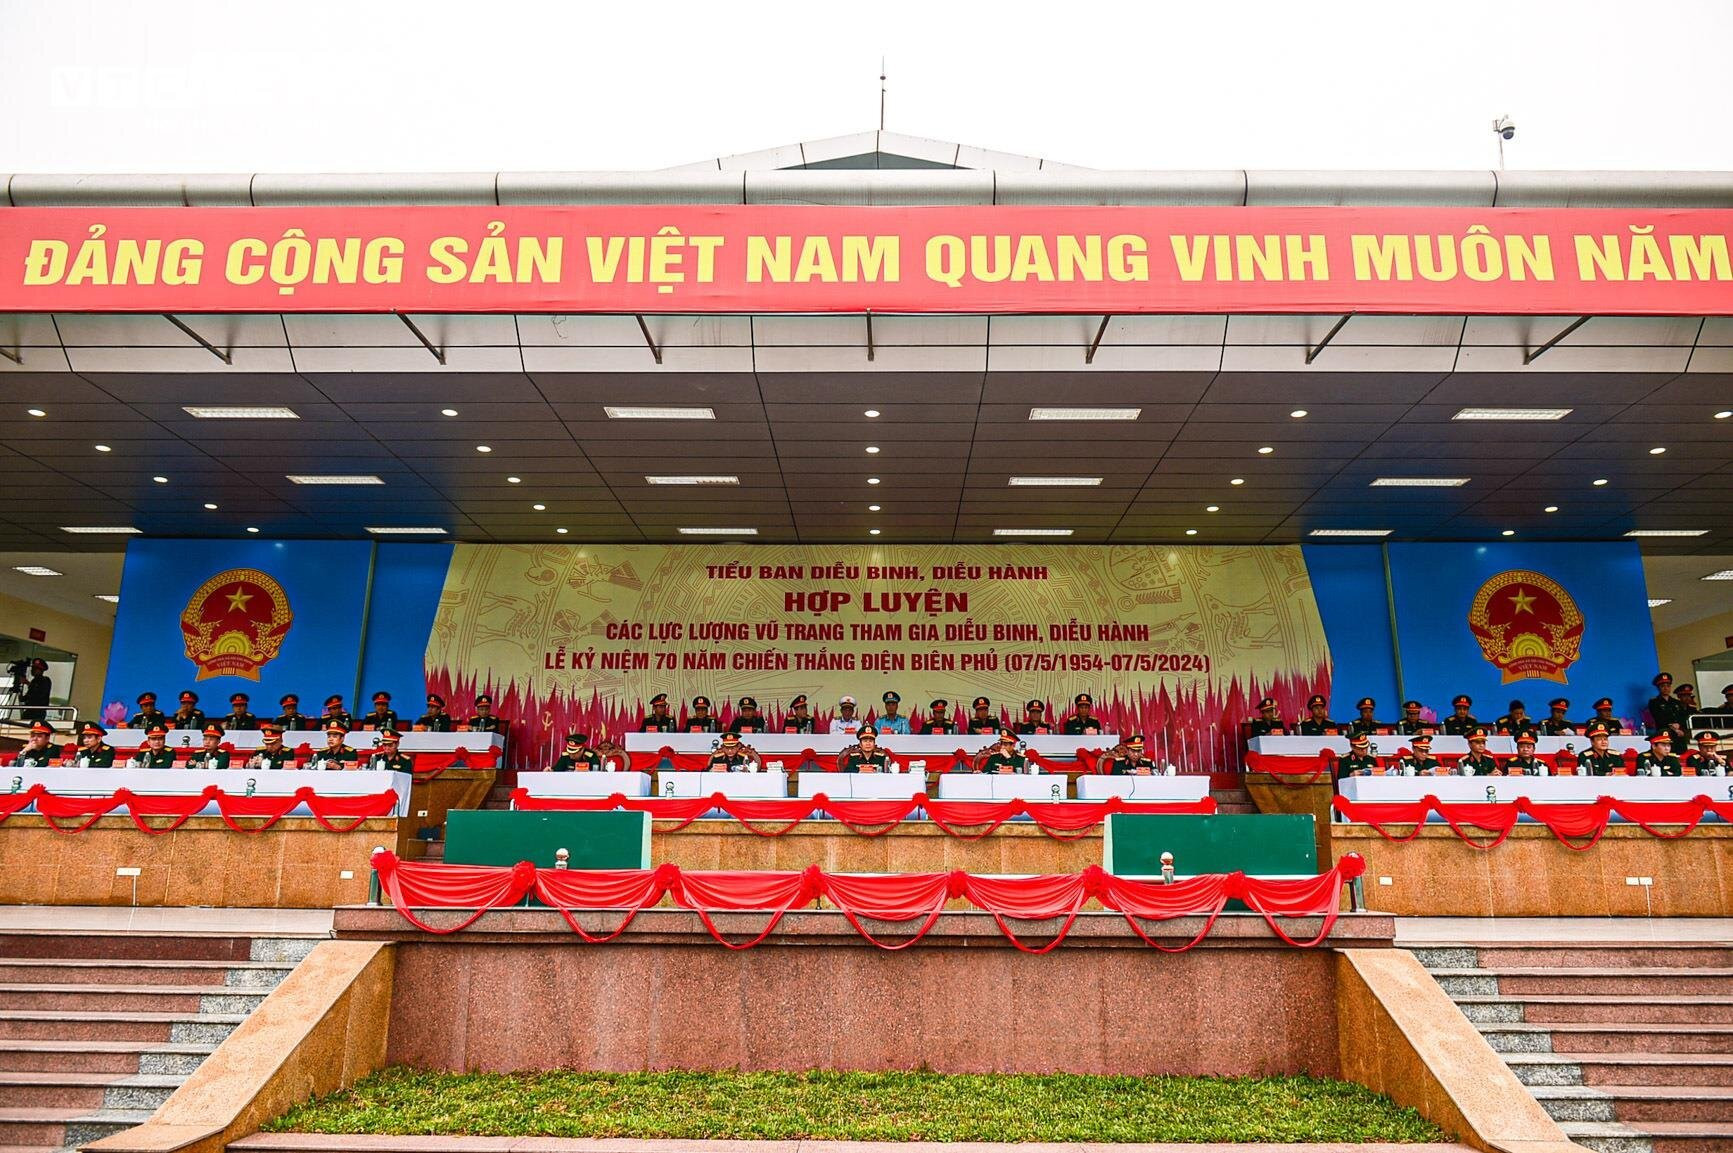 3.500 chiến sĩ hợp luyện diễu binh kỷ niệm Chiến thắng Điện Biên Phủ - 1